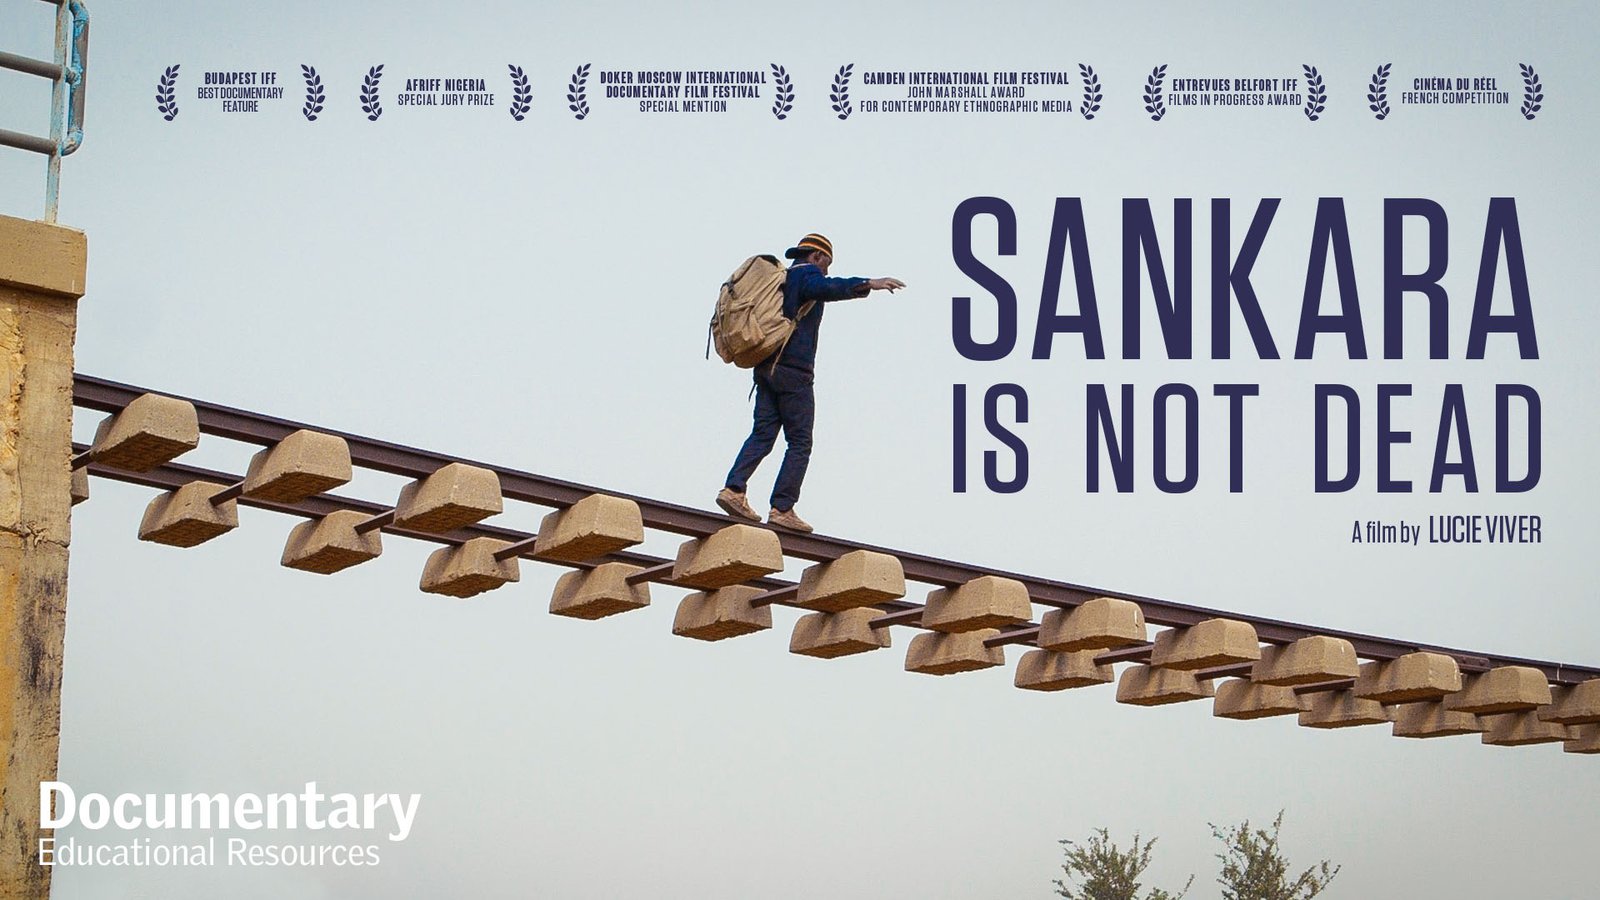 Sankara is Not Dead